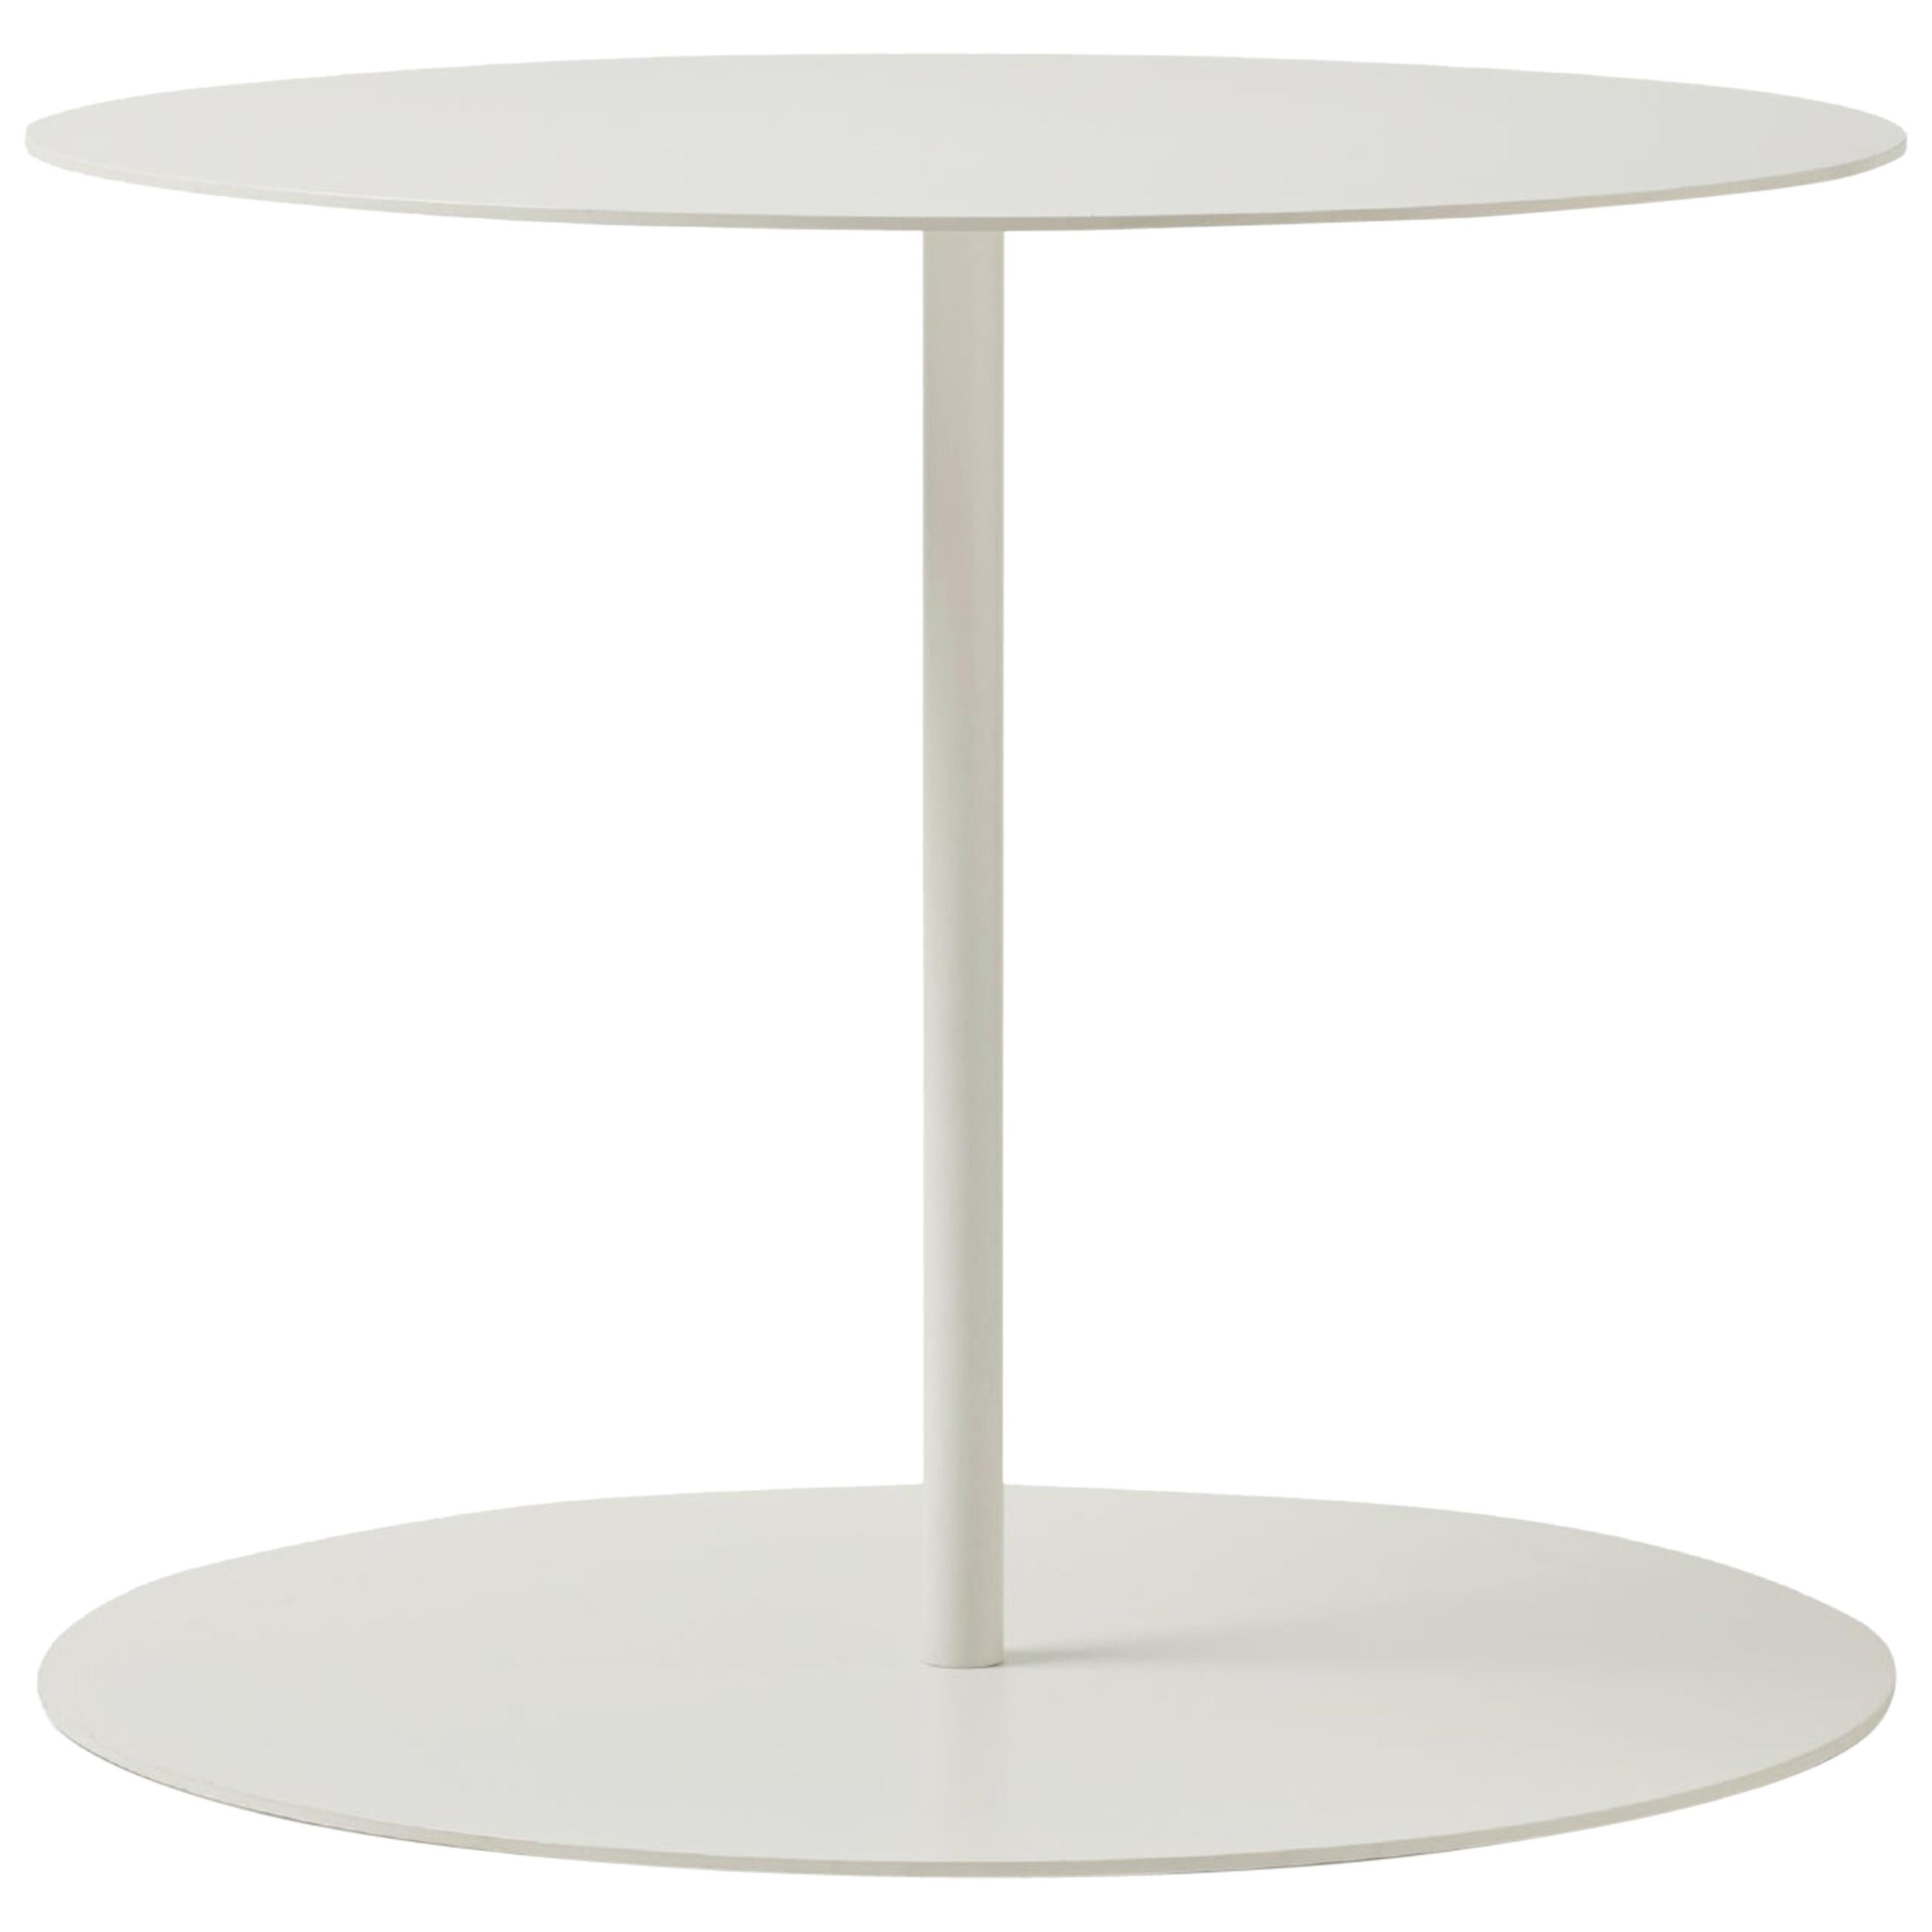 Table Gong de Giulio Cappellini en métal blanc découpé au laser et plateau mat